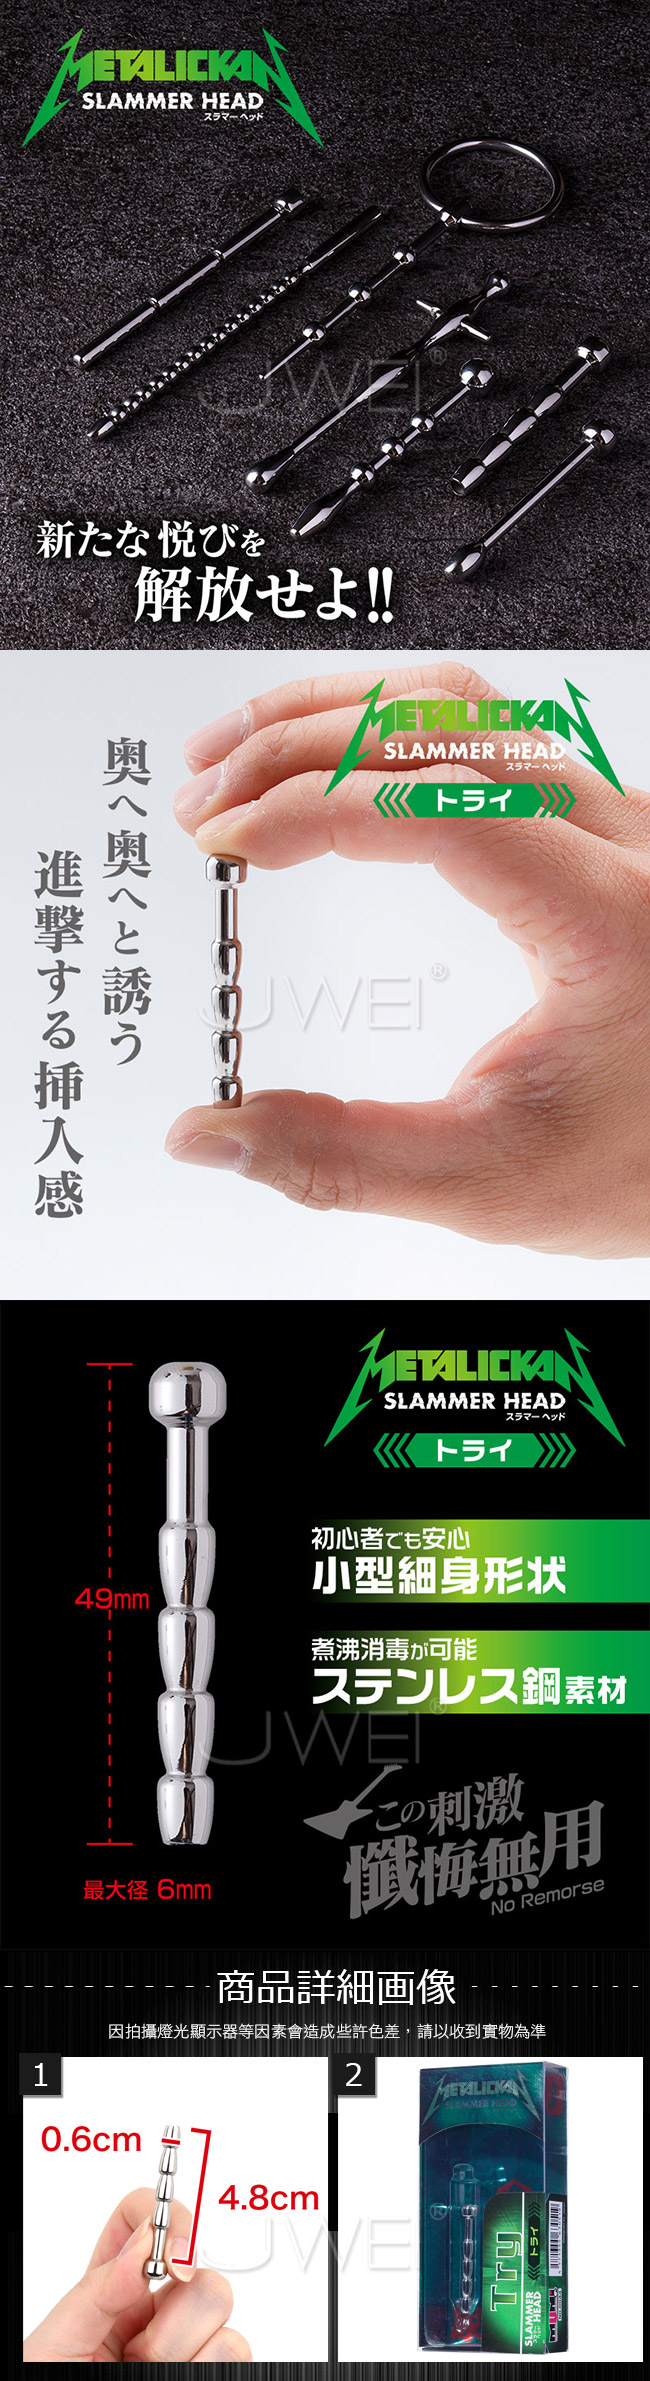 日本原裝進口NPG．METALICKAN Slammer Head 初心者專用不銹鋼馬眼尿道刺激器-Try